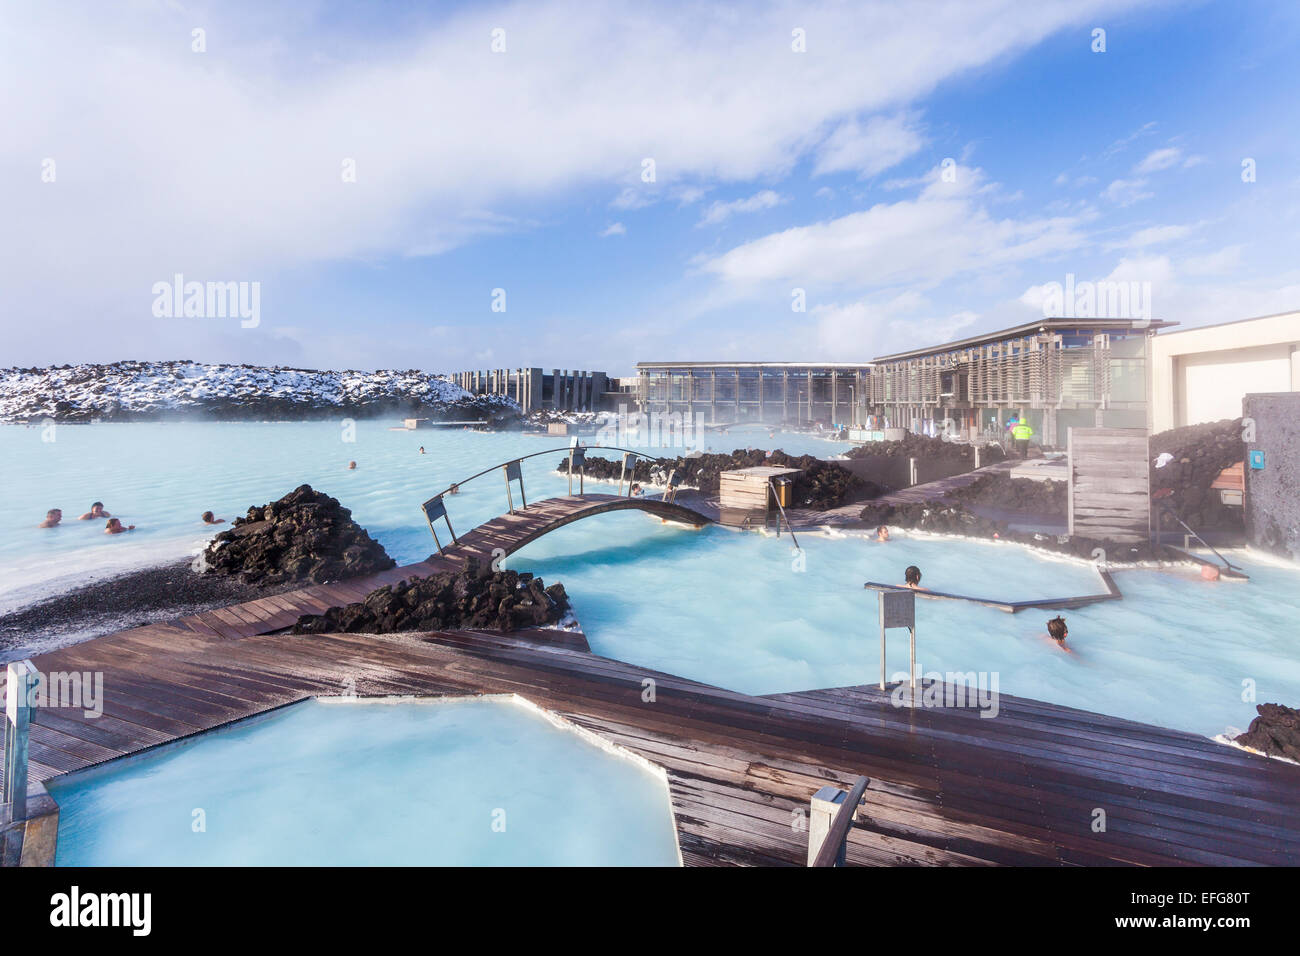 La cuisson à eaux du lagon bleu, pont et passerelles : un spa et piscine géothermique en Islande, l'une de ses attractions les plus populaires de l'île Banque D'Images